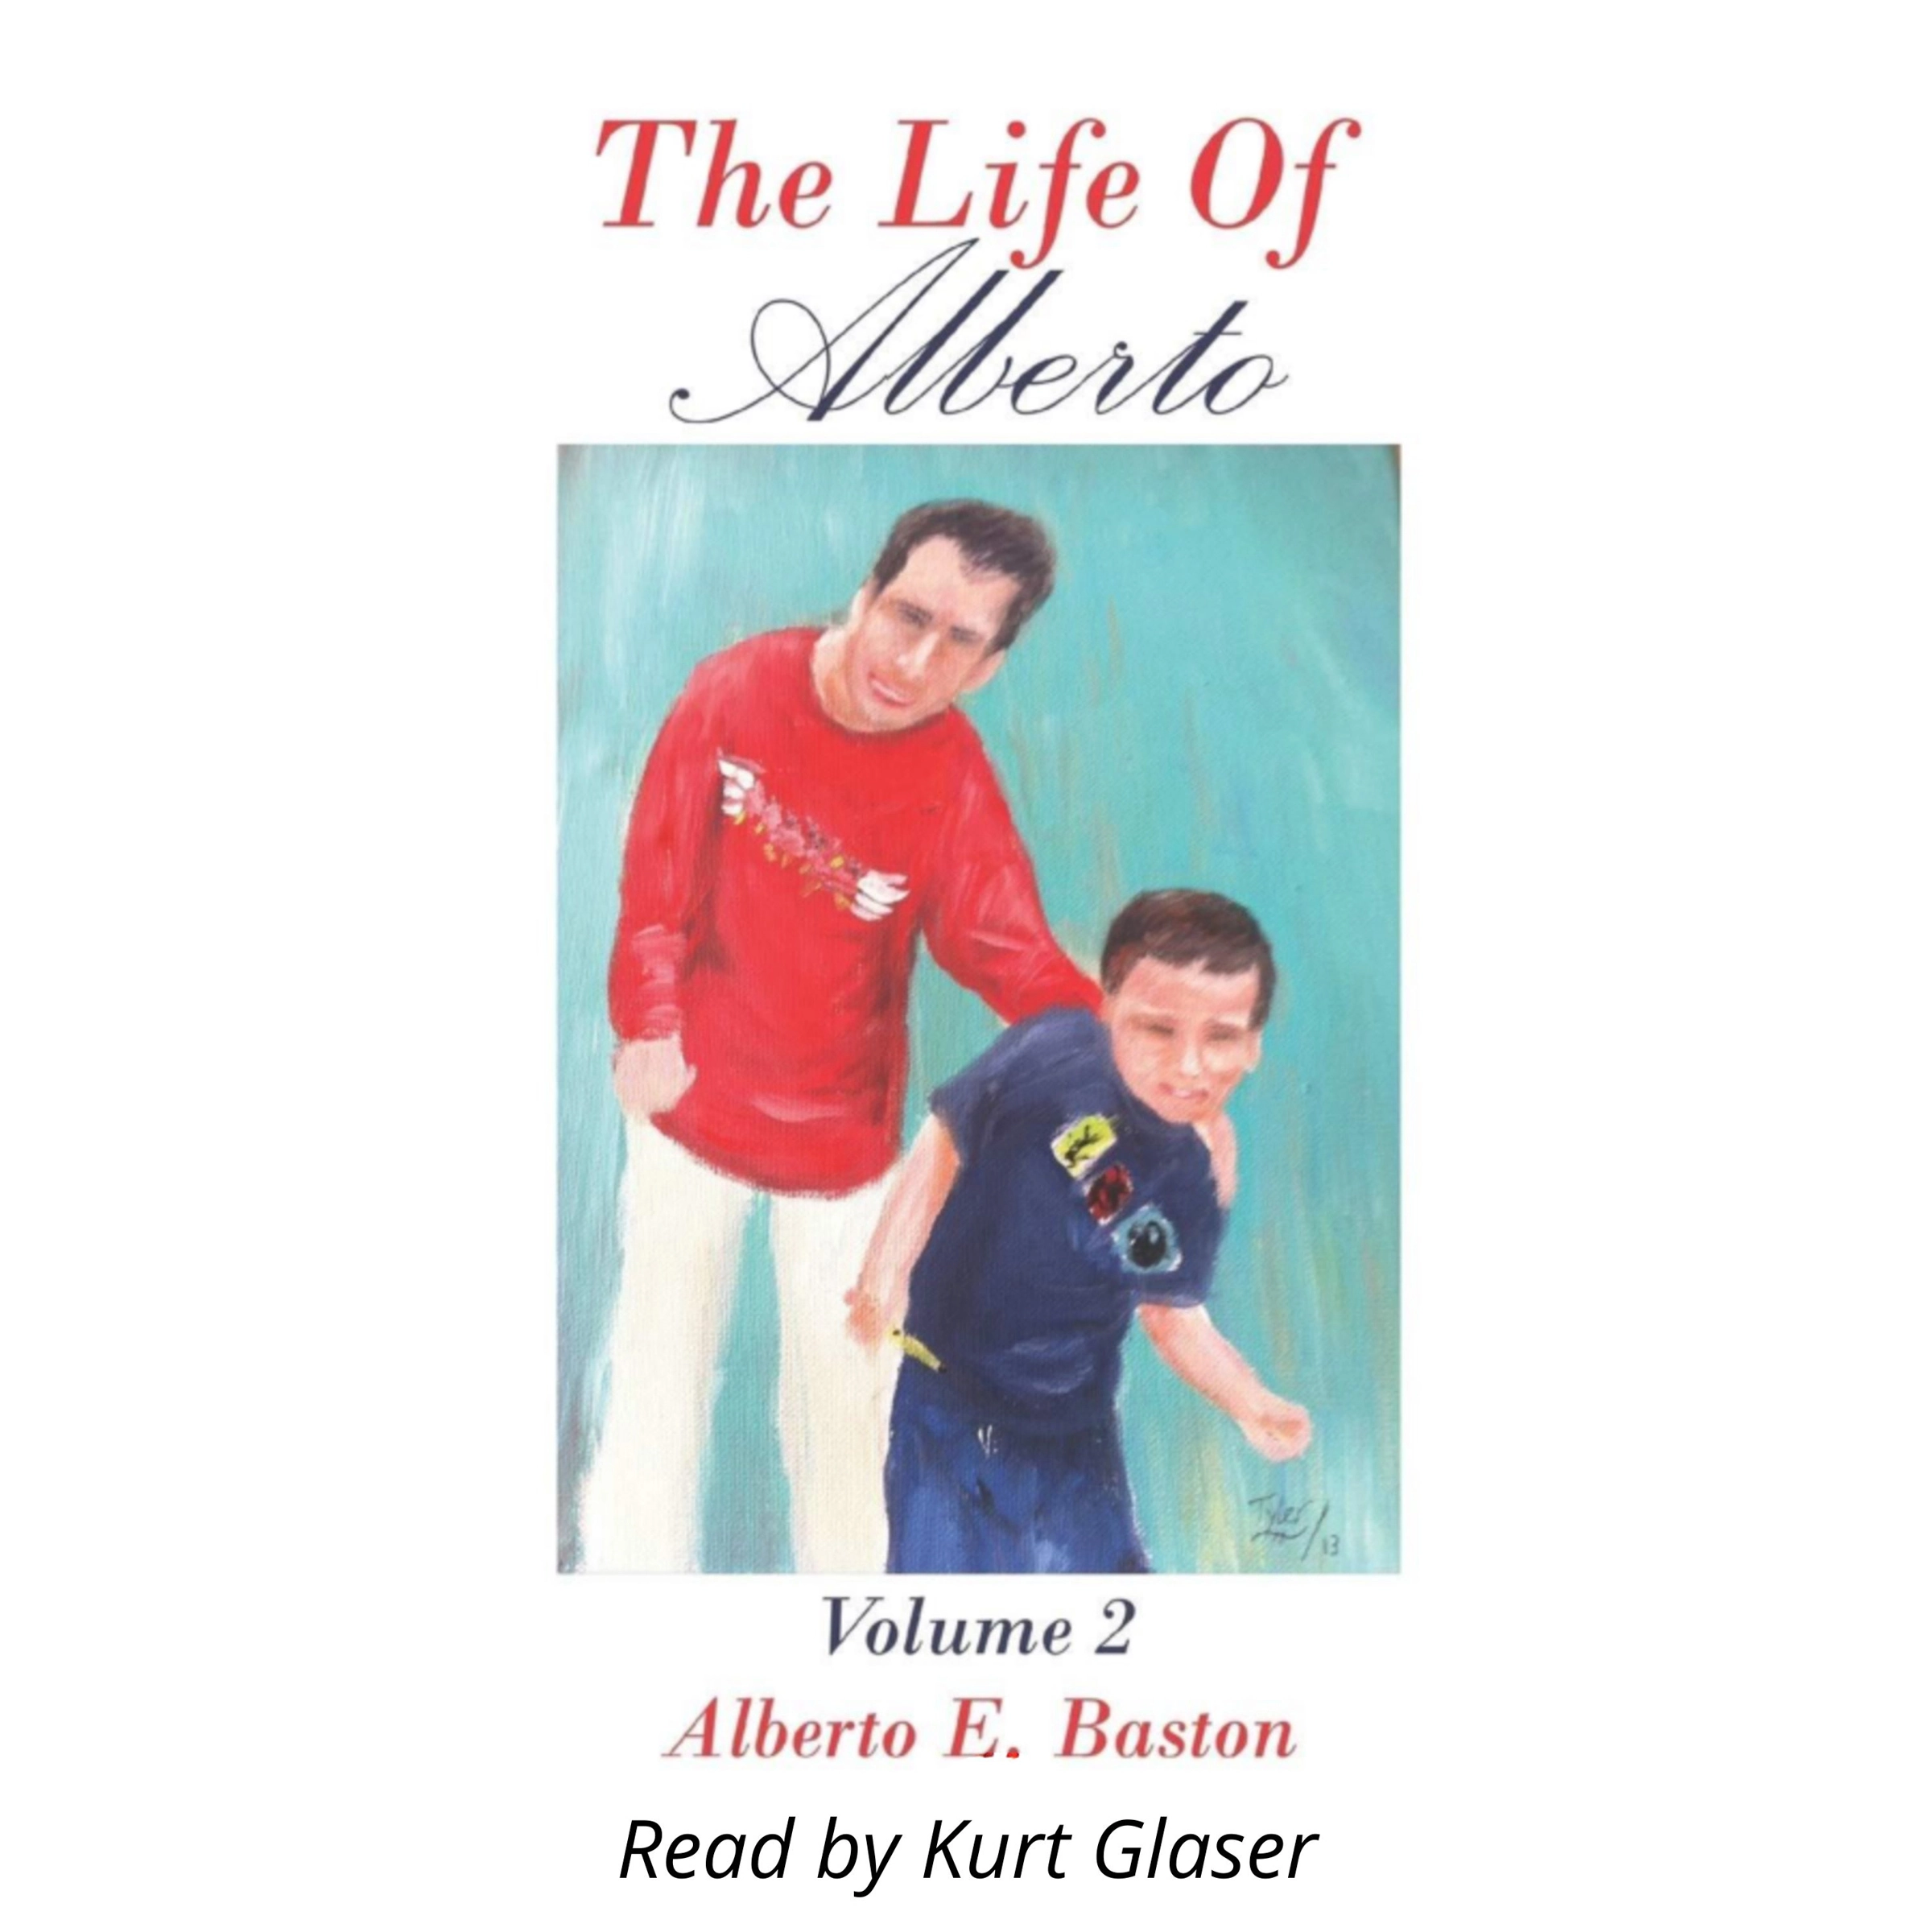 The Life of Alberto by Alberto E Baston Audiobook